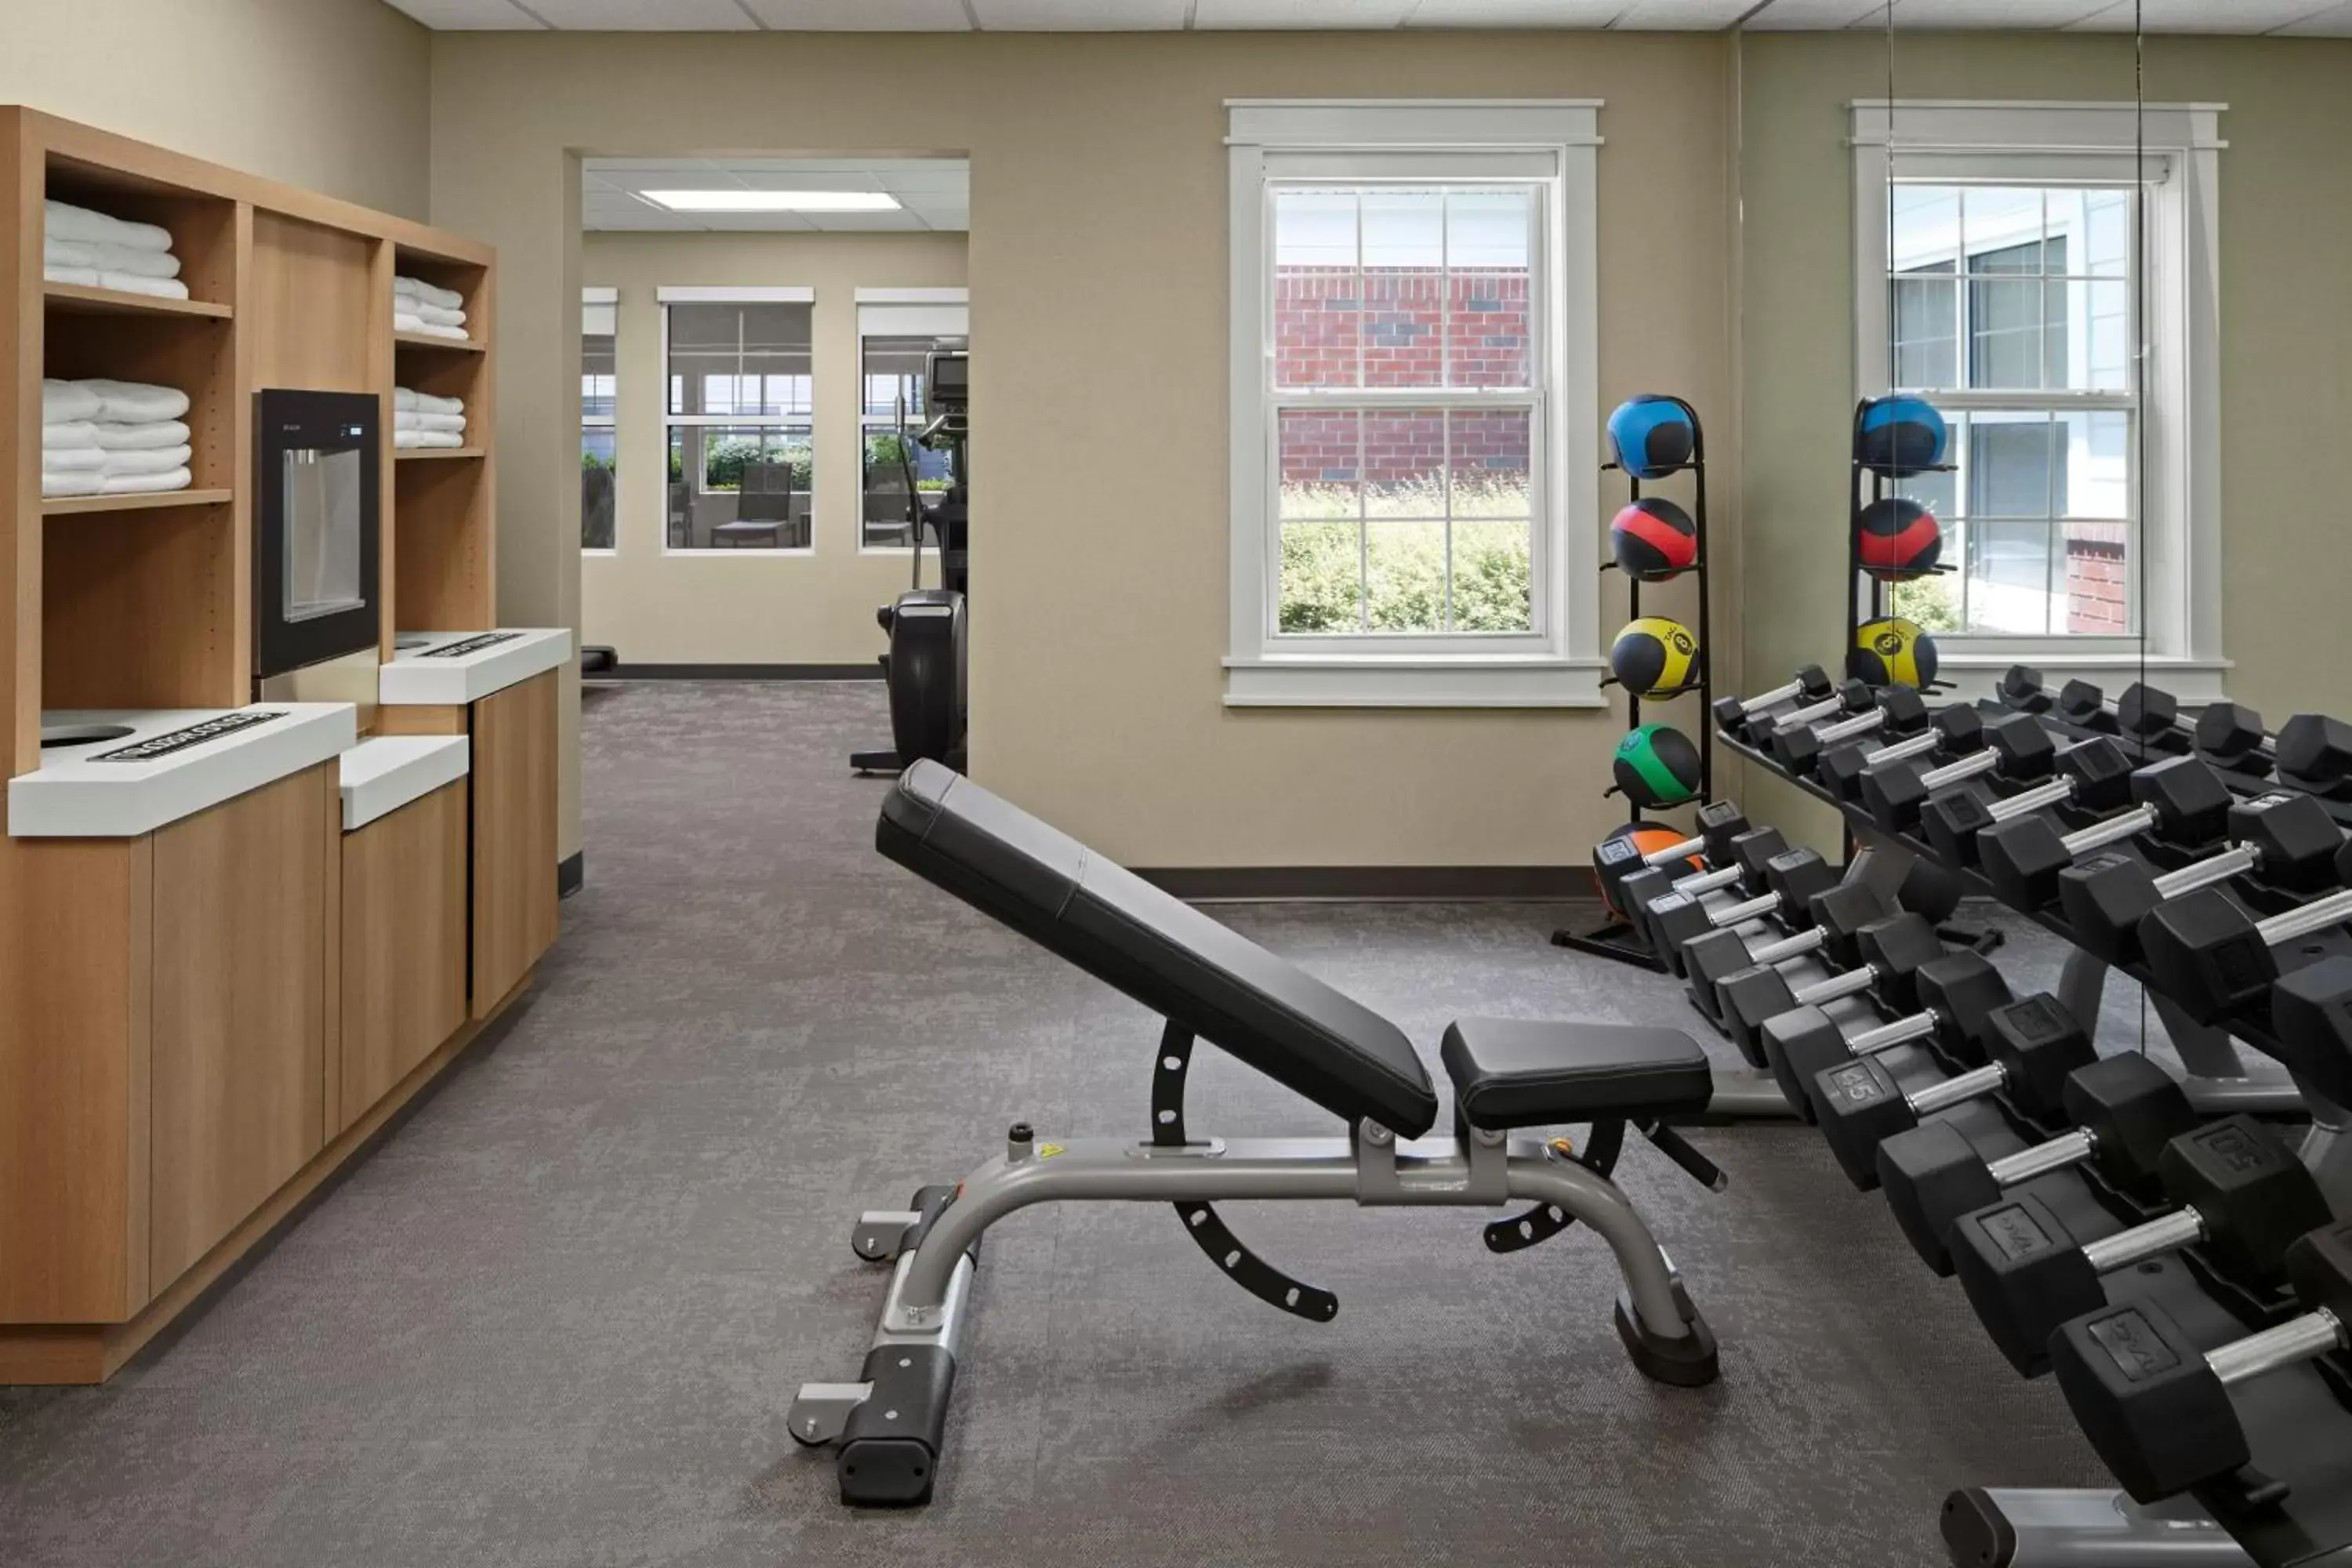 Fitness centre/facilities, Fitness Center/Facilities in Residence Inn Manassas Battlefield Park